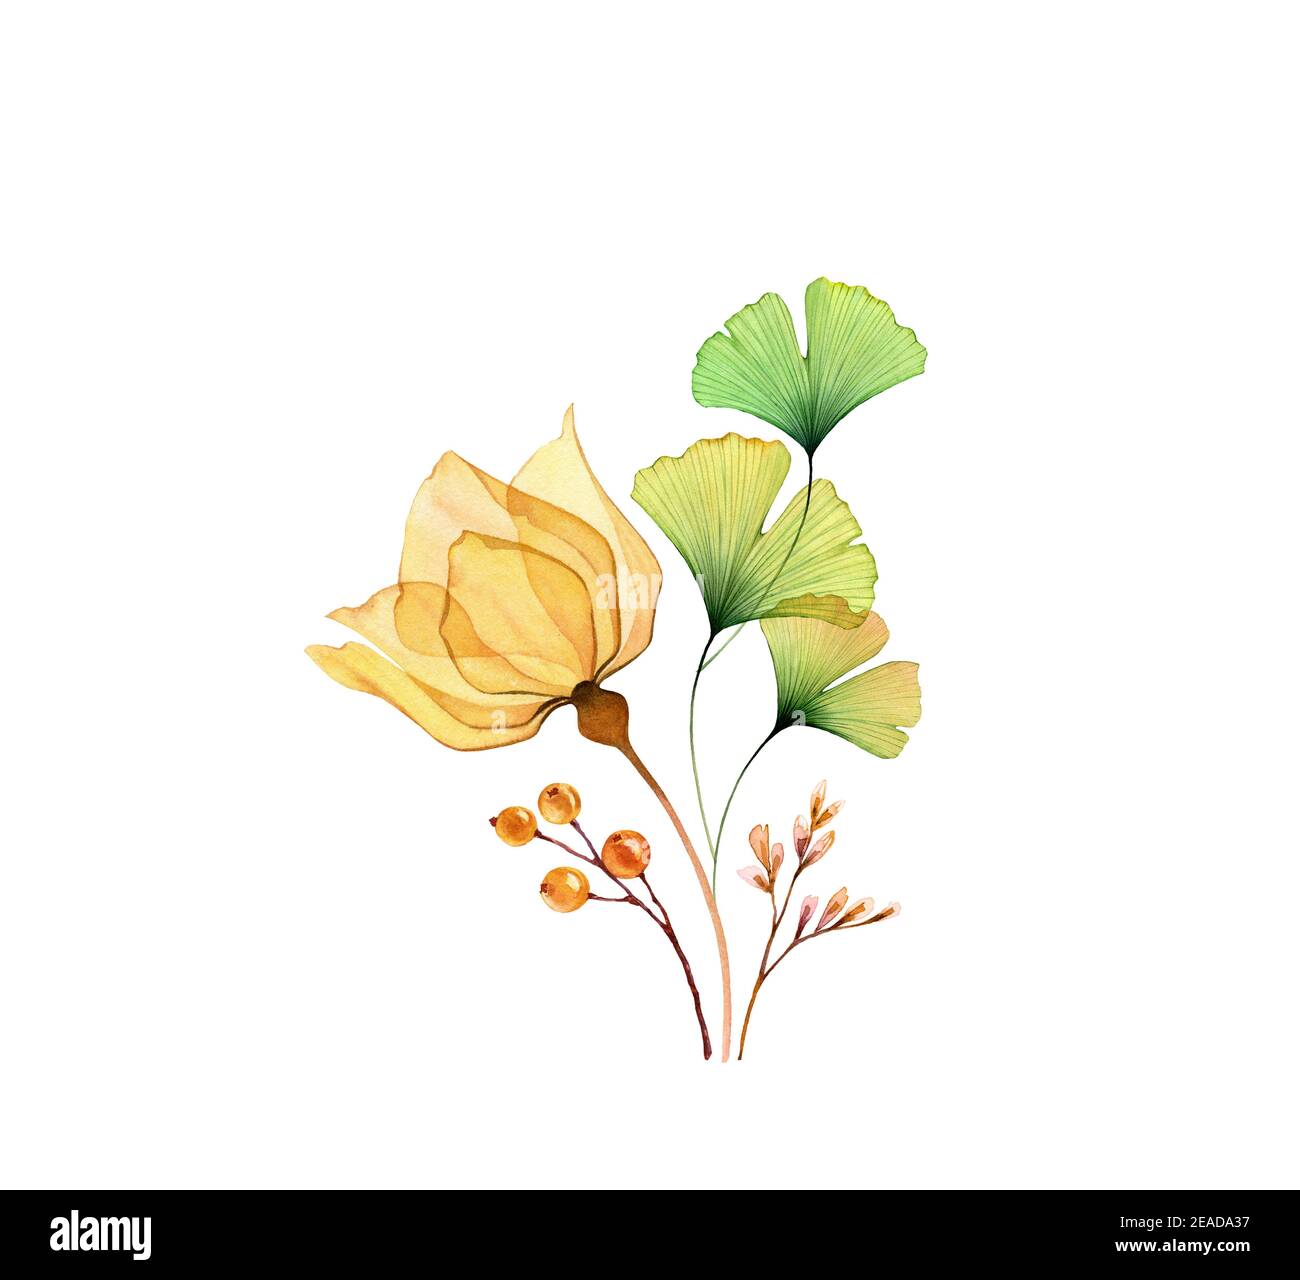 Aquarell-Blumenarrangement. Transparente gelbe Rose mit grünen Ginkgo-Blättern isoliert auf weiß. Handbemalter moderner Blumenstrauß. Botanische Abbildung Stockfoto